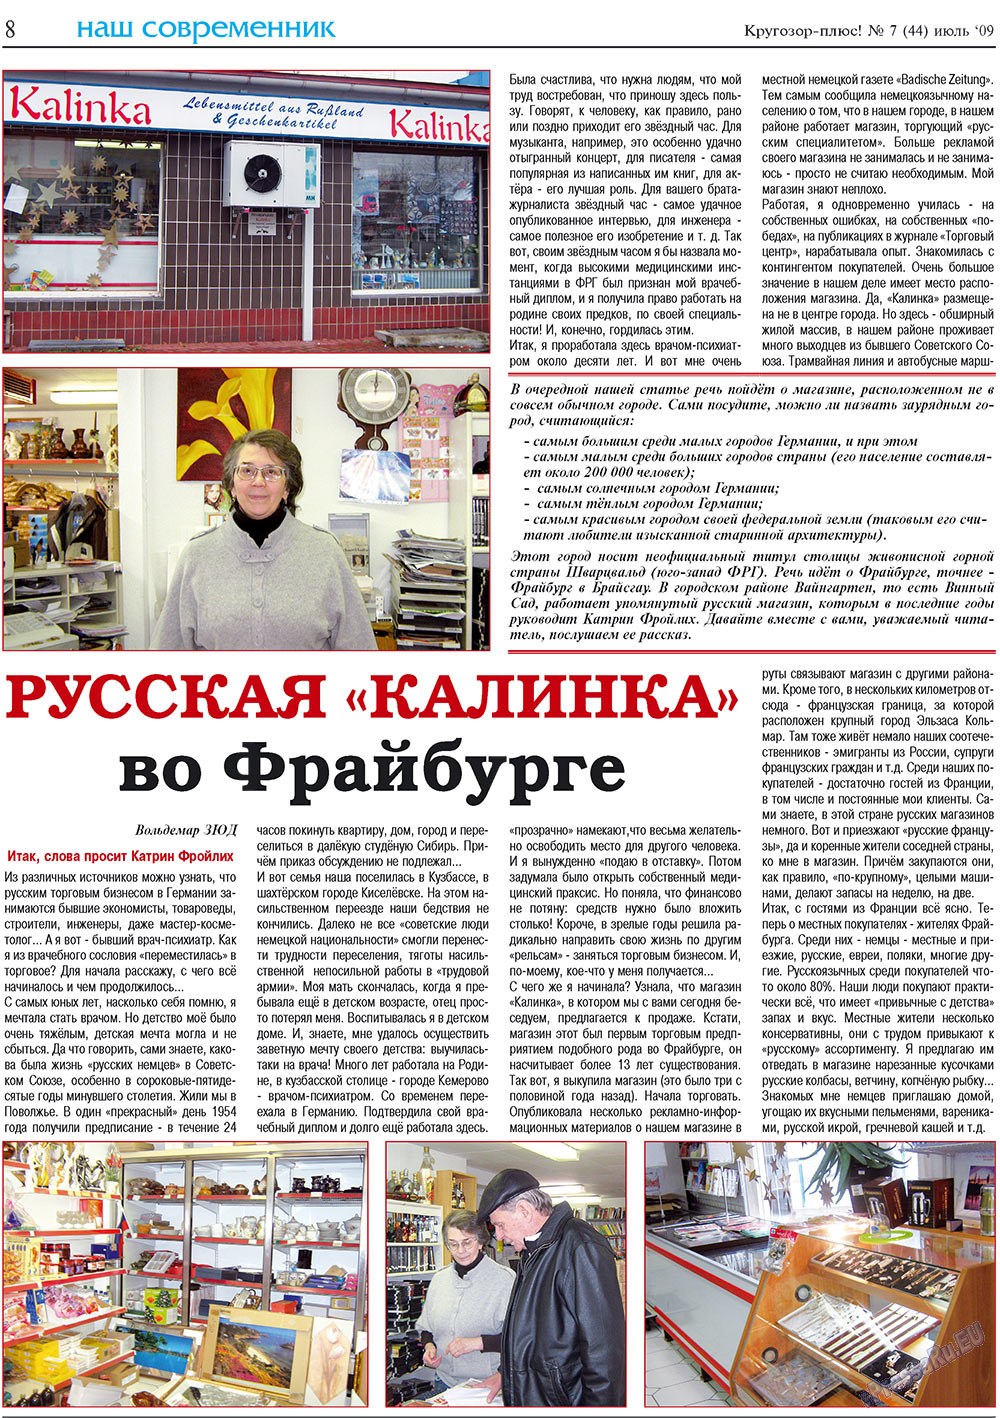 Кругозор плюс!, газета. 2009 №7 стр.8